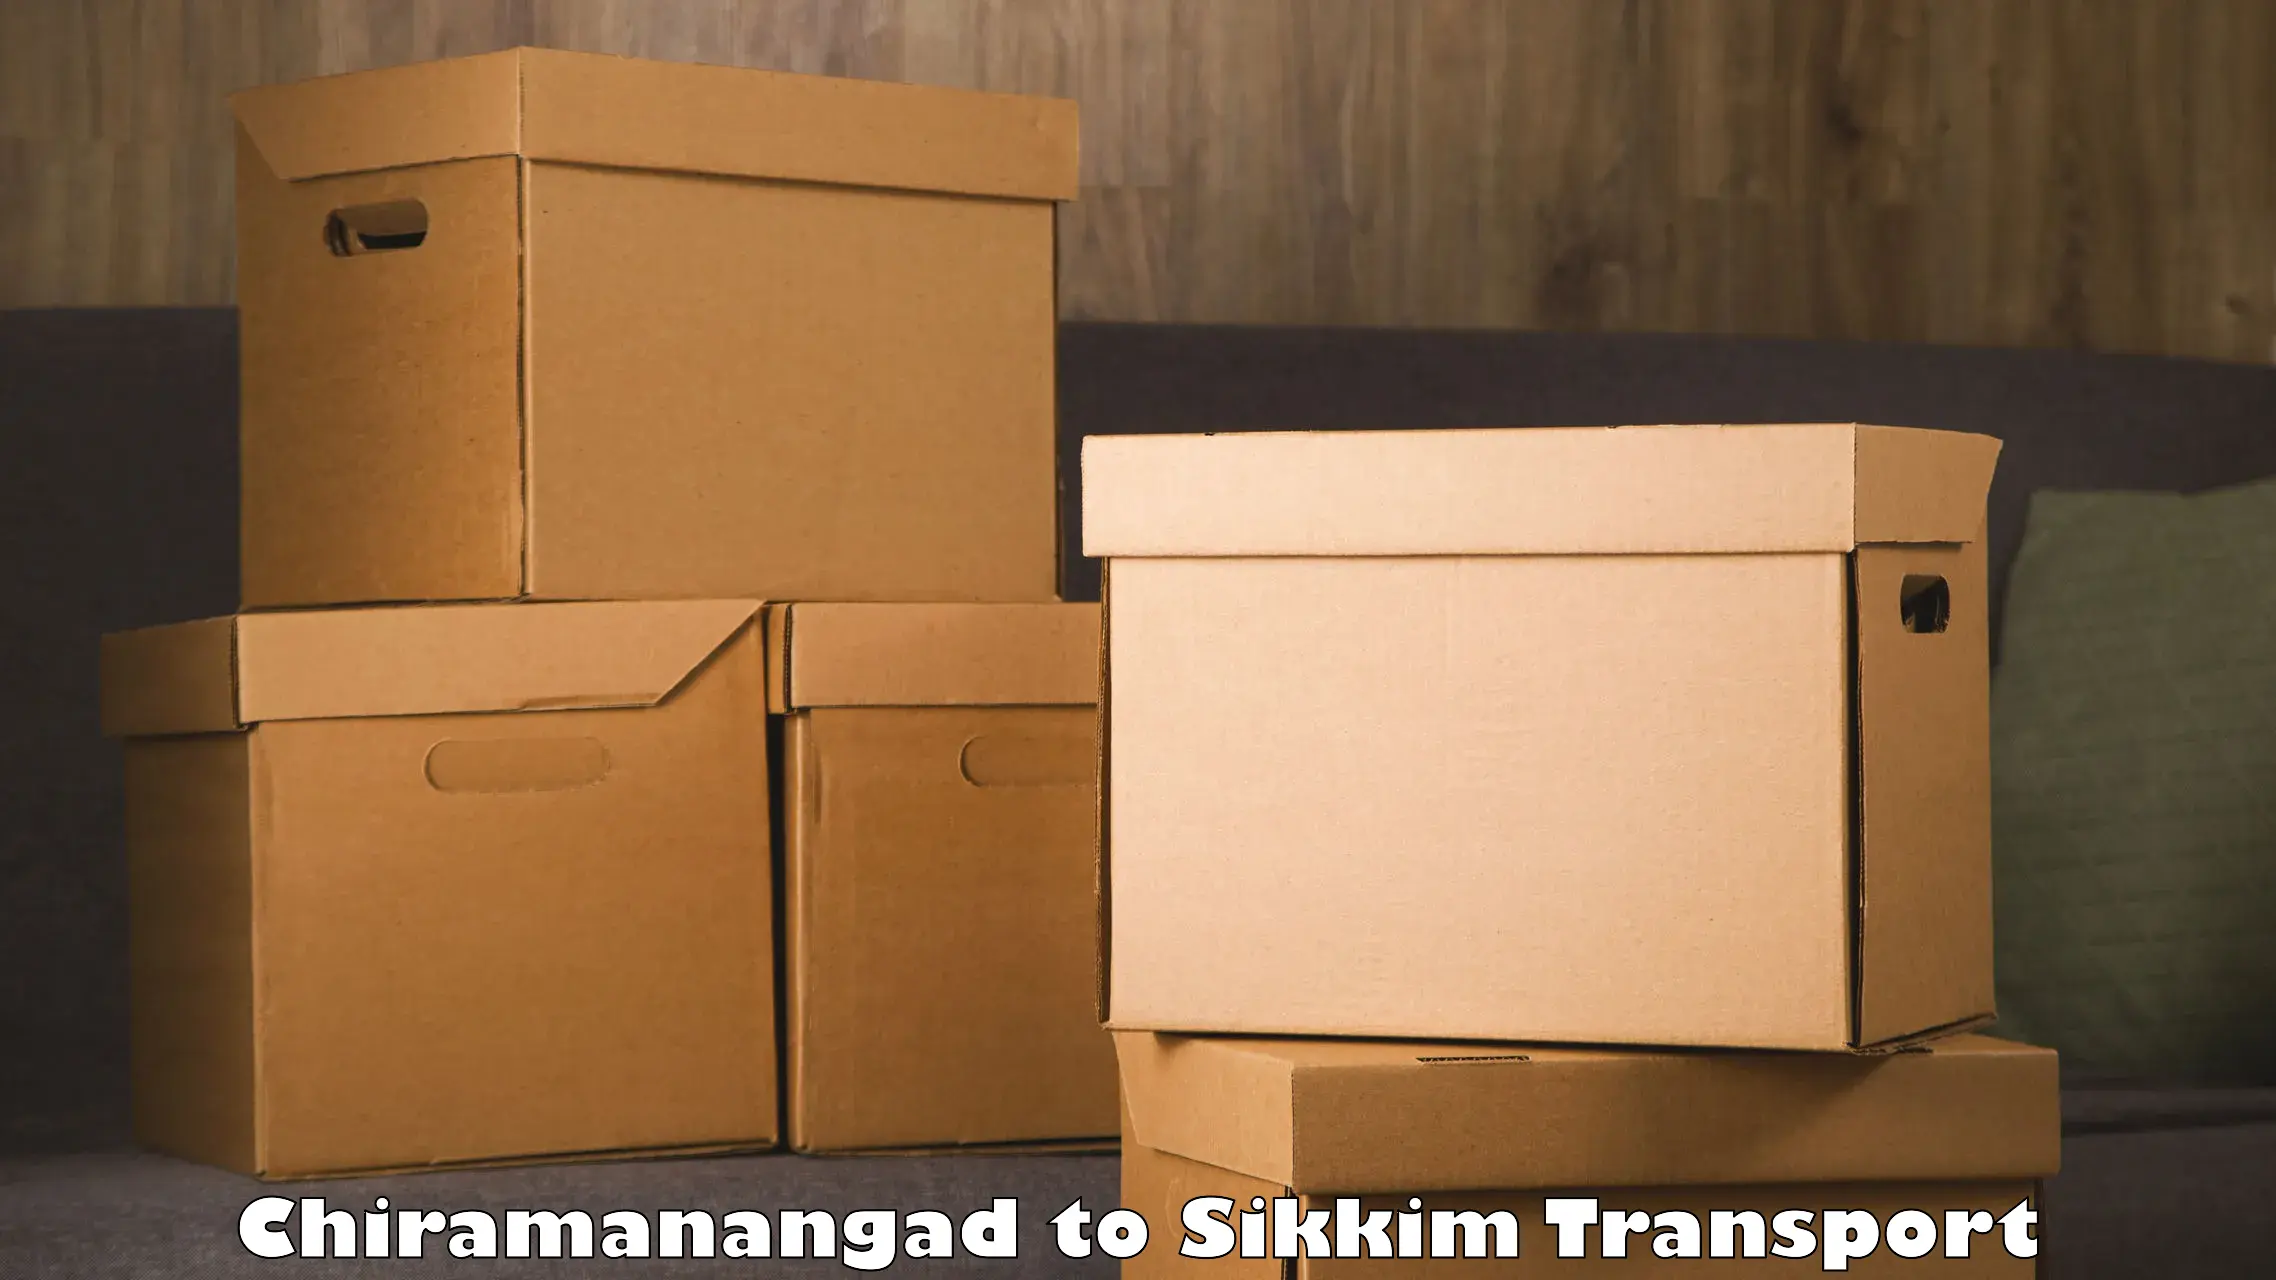 Nearest transport service Chiramanangad to Mangan